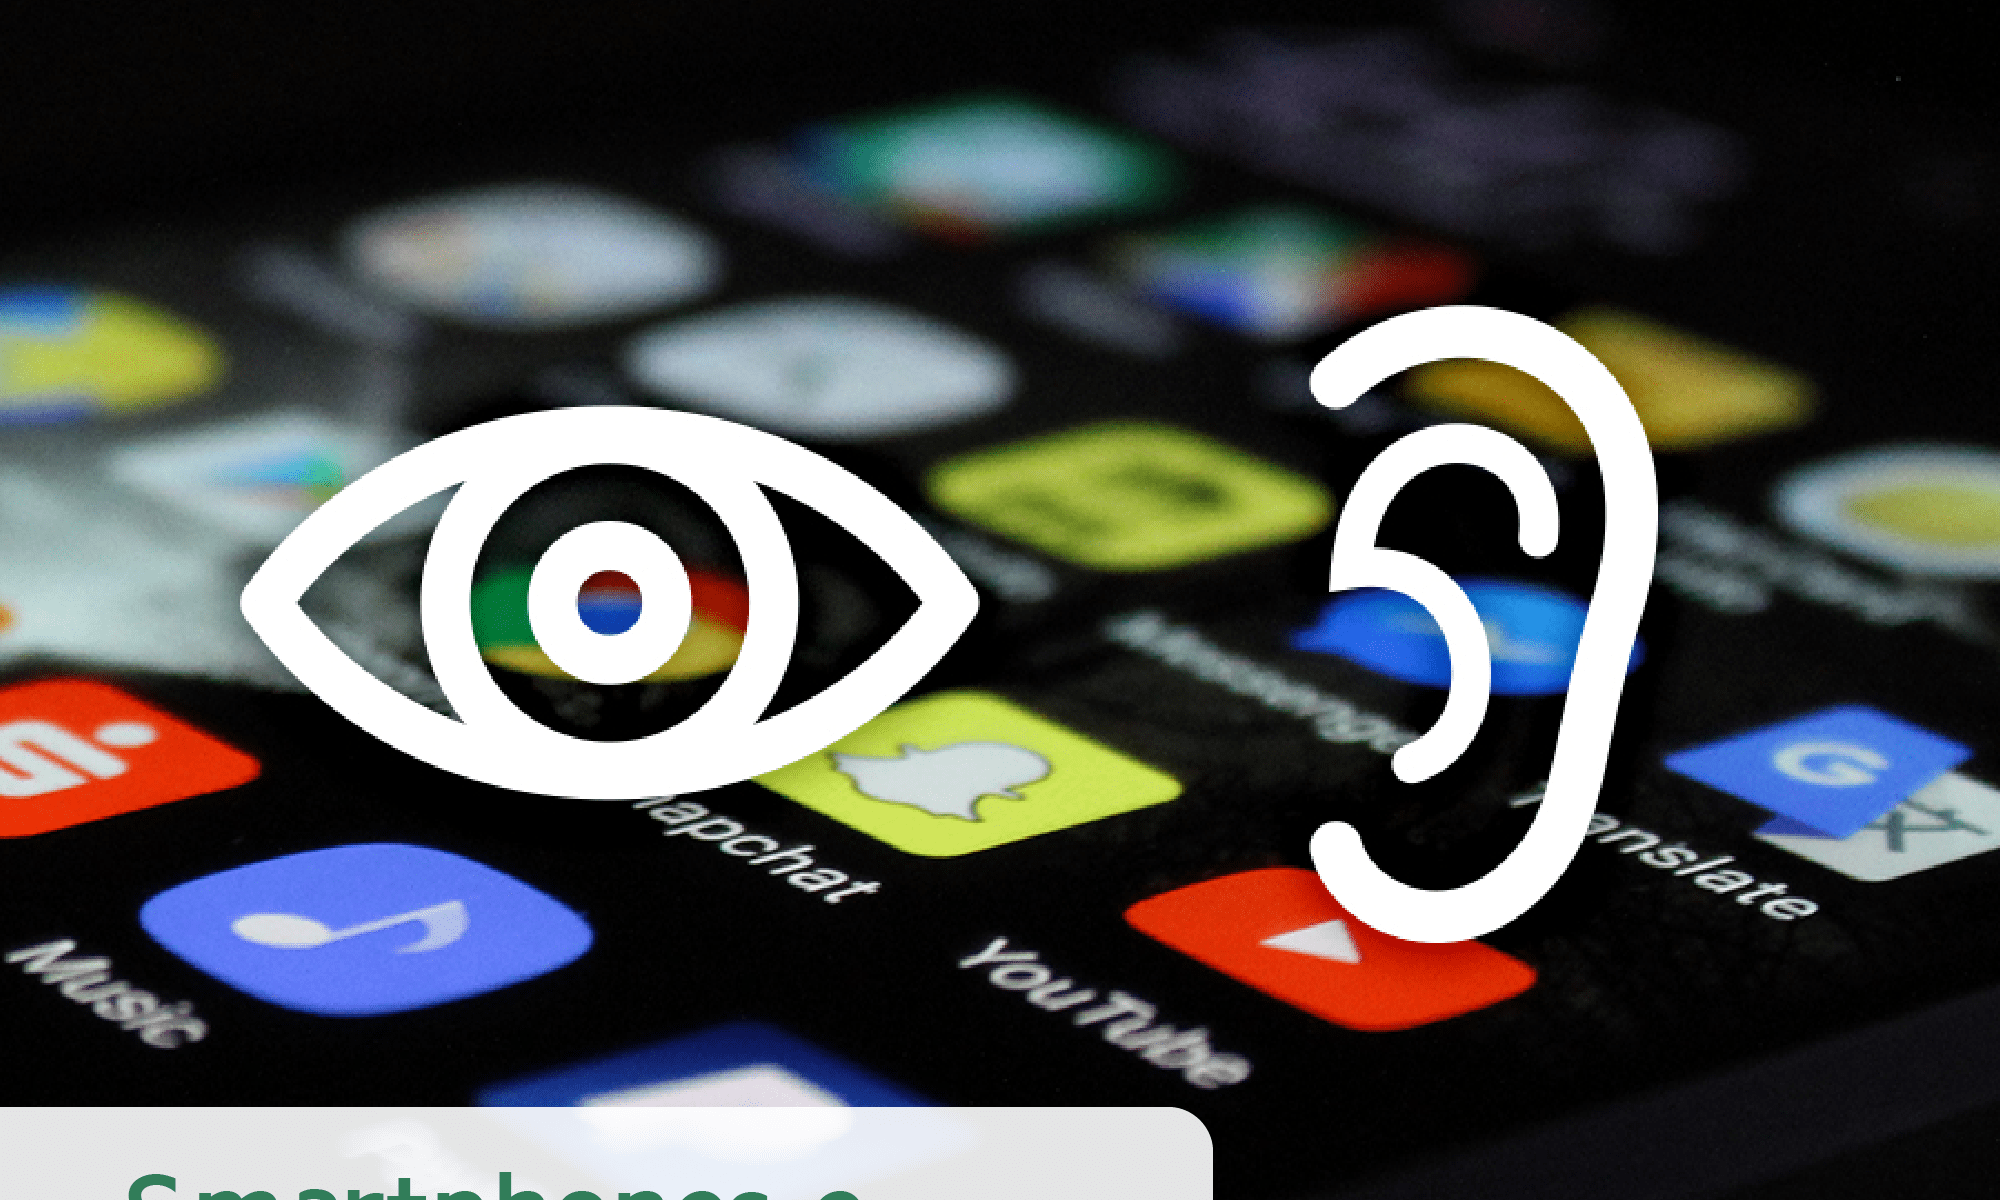 #PraCegoVer imagem ilustrativa. A imagem mostra diversos ícones de aplicativos e sobre esa imagem há um ícone de um olho e um ouvido.. Está escrito: "smartphones e apps para o dia-a-dia" e há a logo da Retina Brasil.